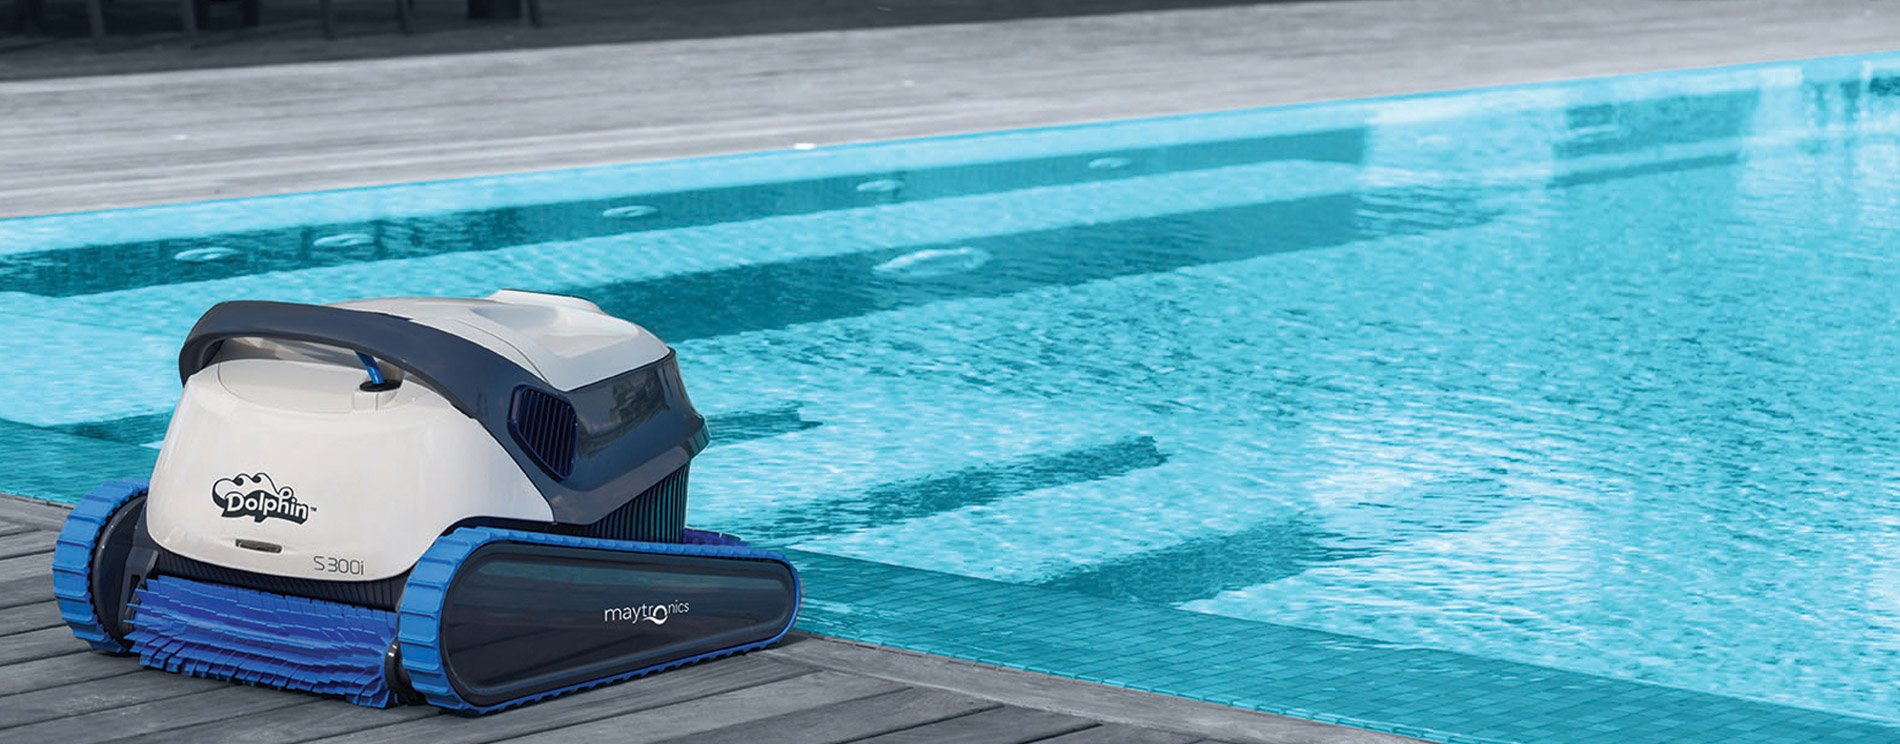 Робот пылесос для бассейна DOLPHIN S300i